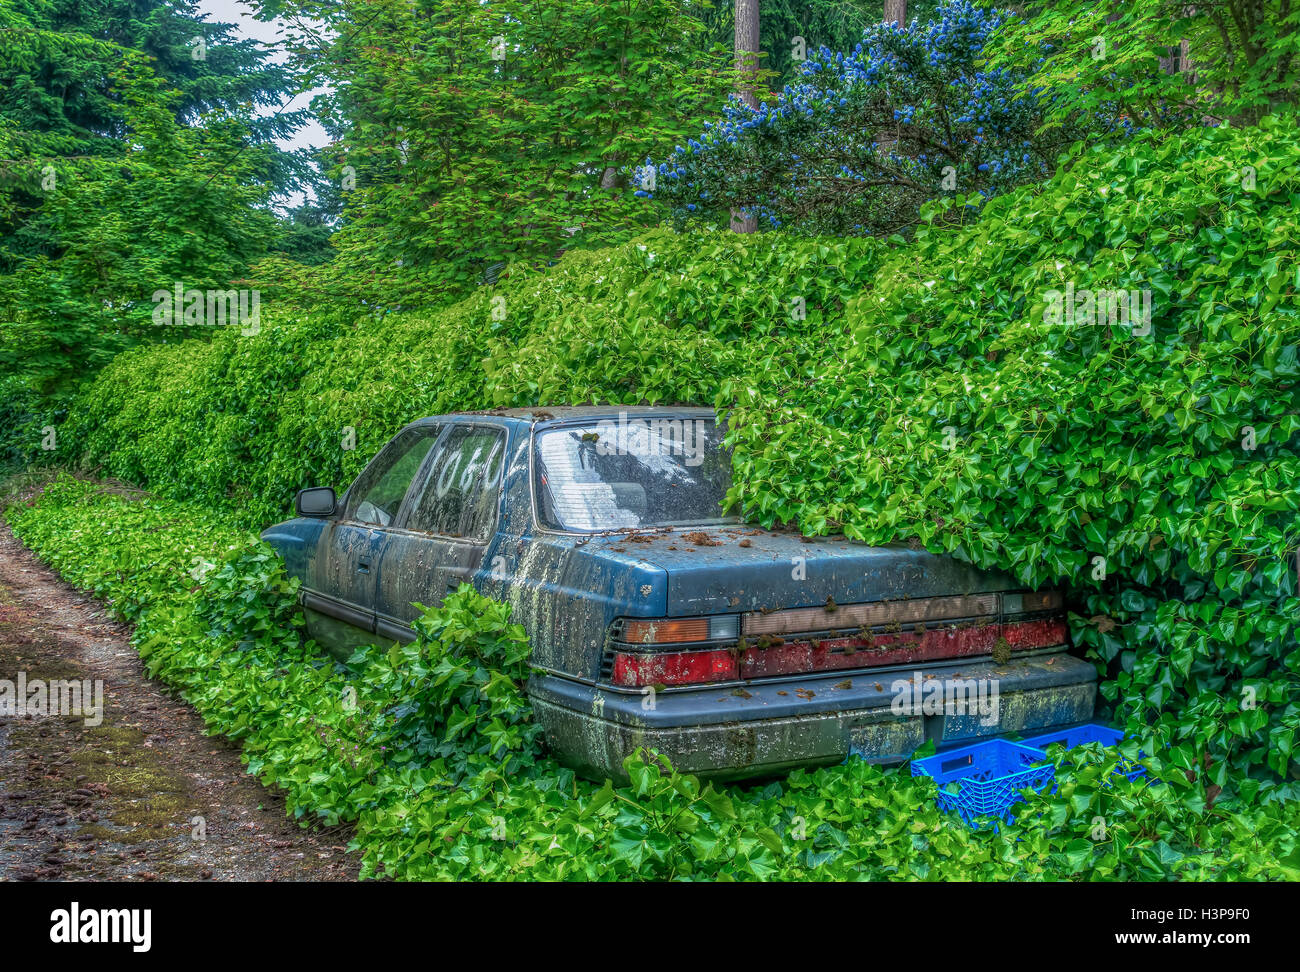 Un viejo automóvil abandonado en ser superada por la naturaleza. Imagen de alto rango dinámico. Foto de stock